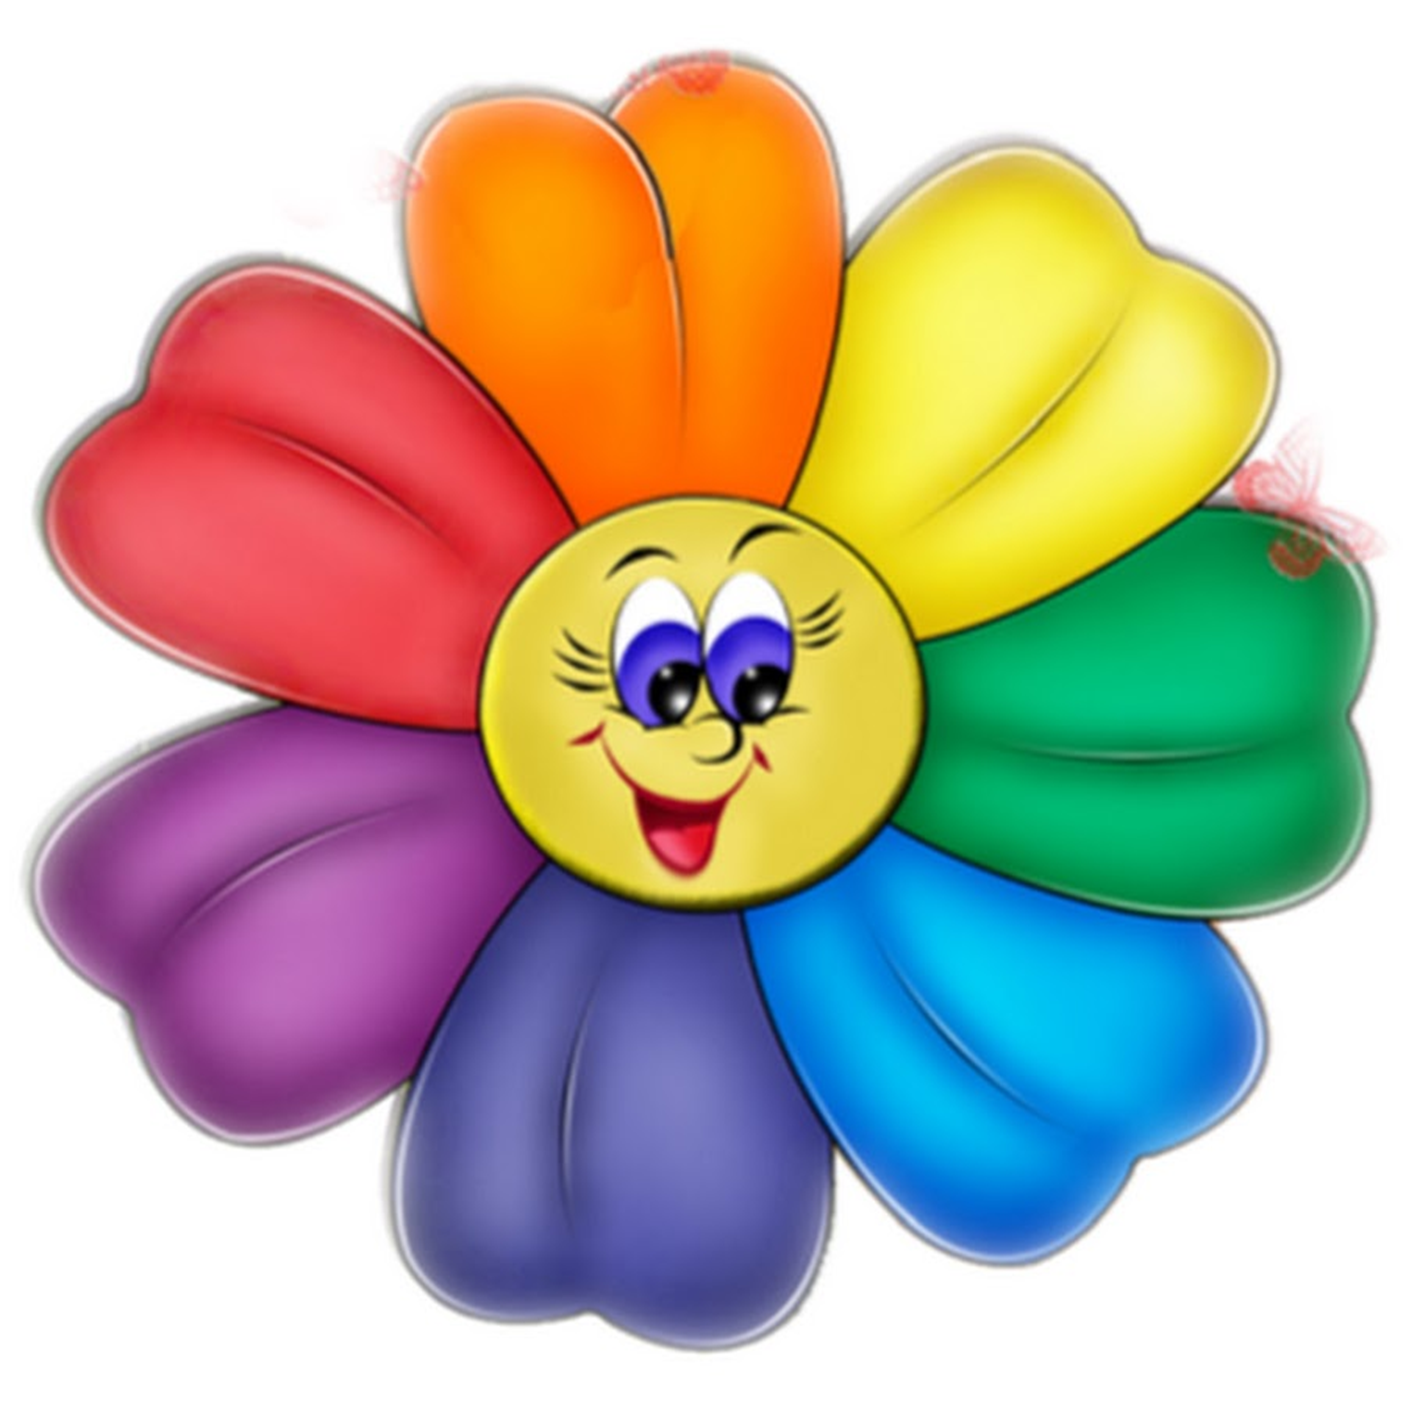 Цветы для оформления группы в детском саду распечатать - фото и картинкиabrakadabra.fun